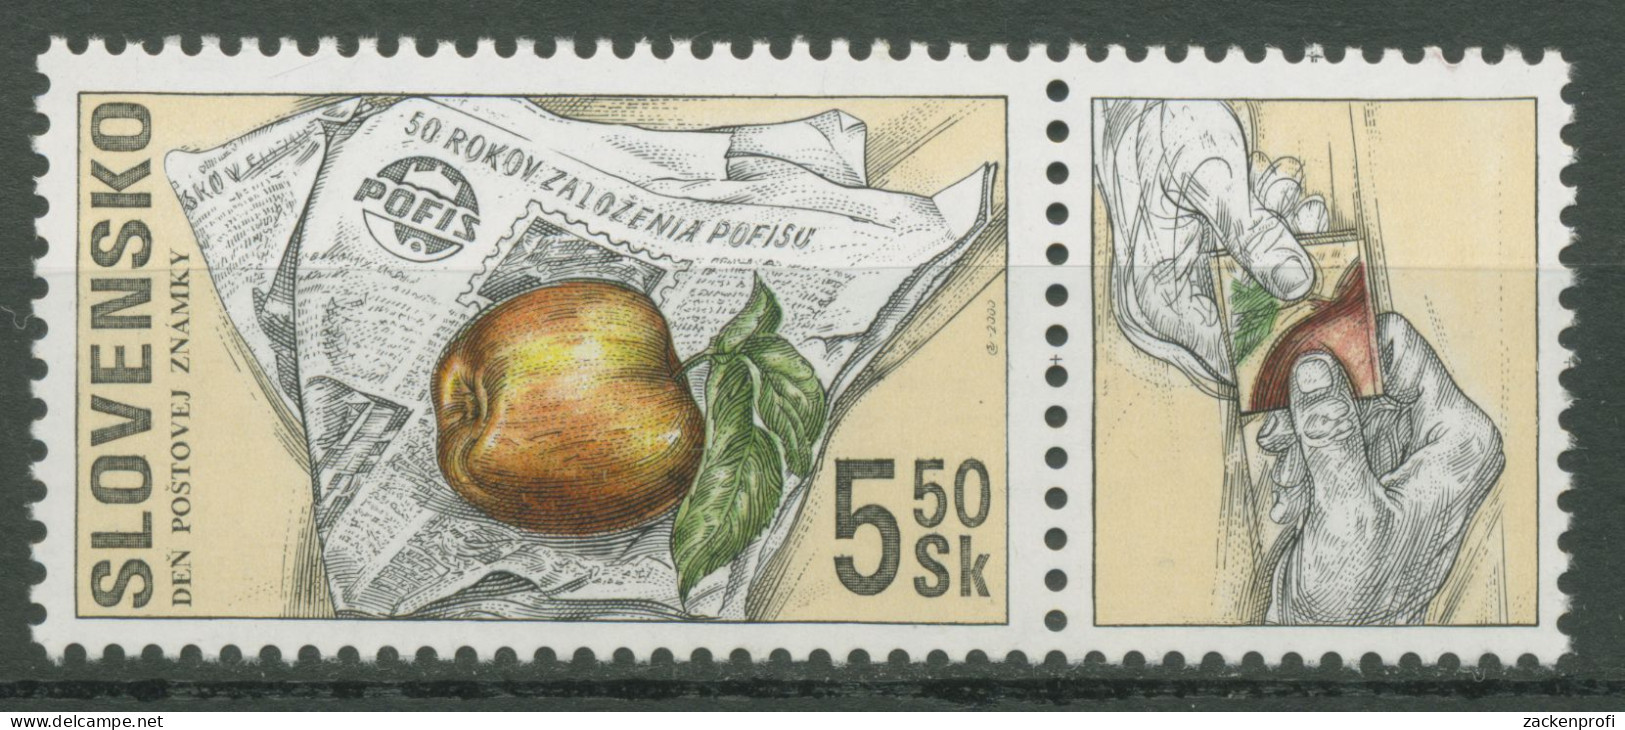 Slowakei 2000 Tag Der Briefmarke POFIS Zeitschrift 383 Zf Postfrisch - Ongebruikt